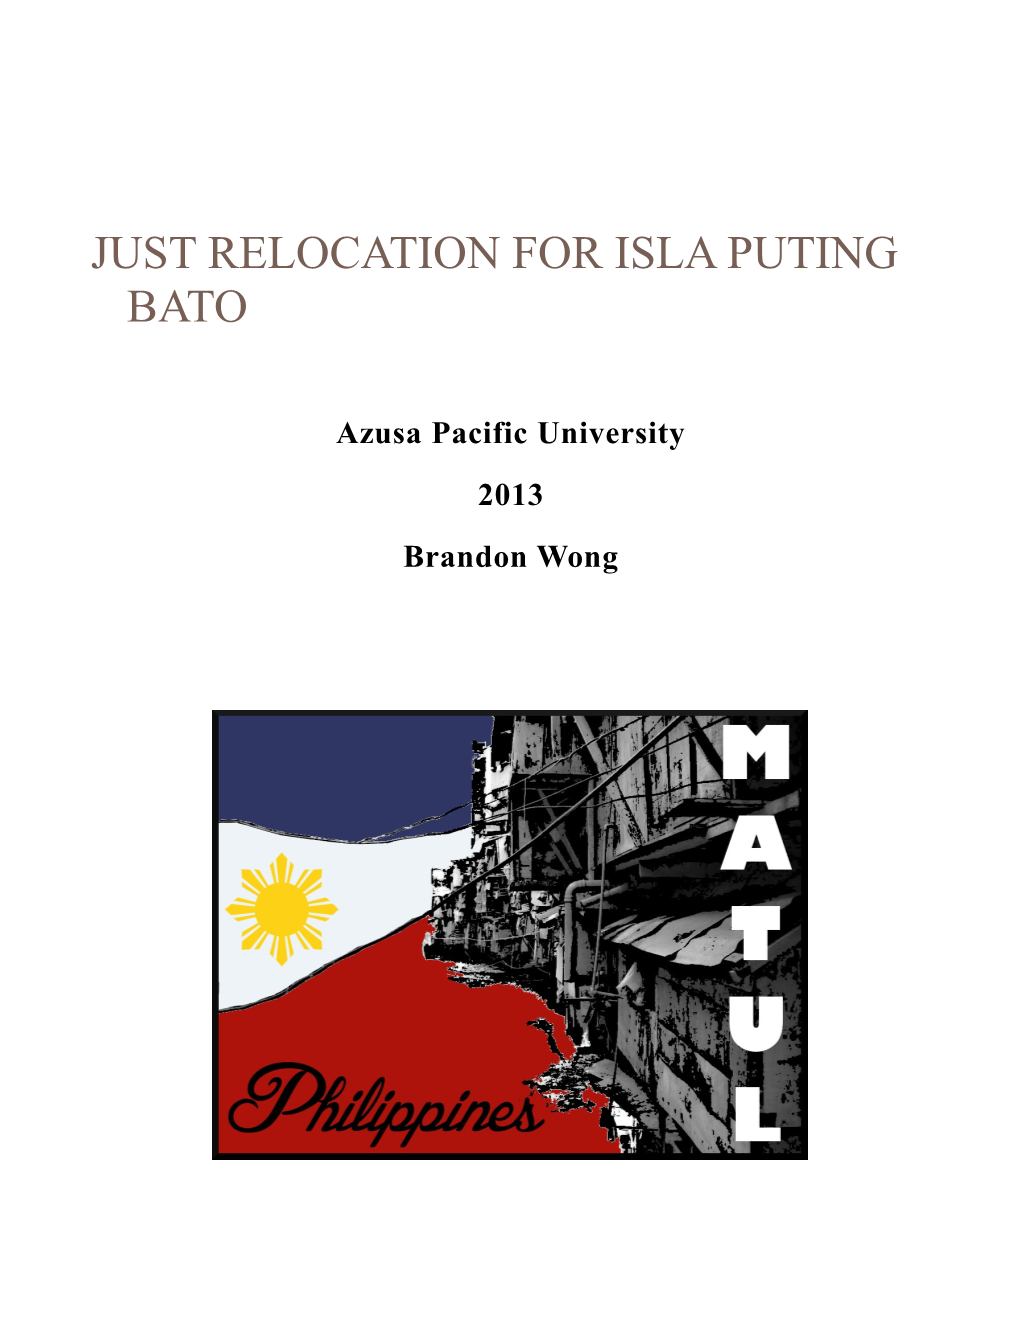 Isla Puting Bato: a Case Study in Relocation